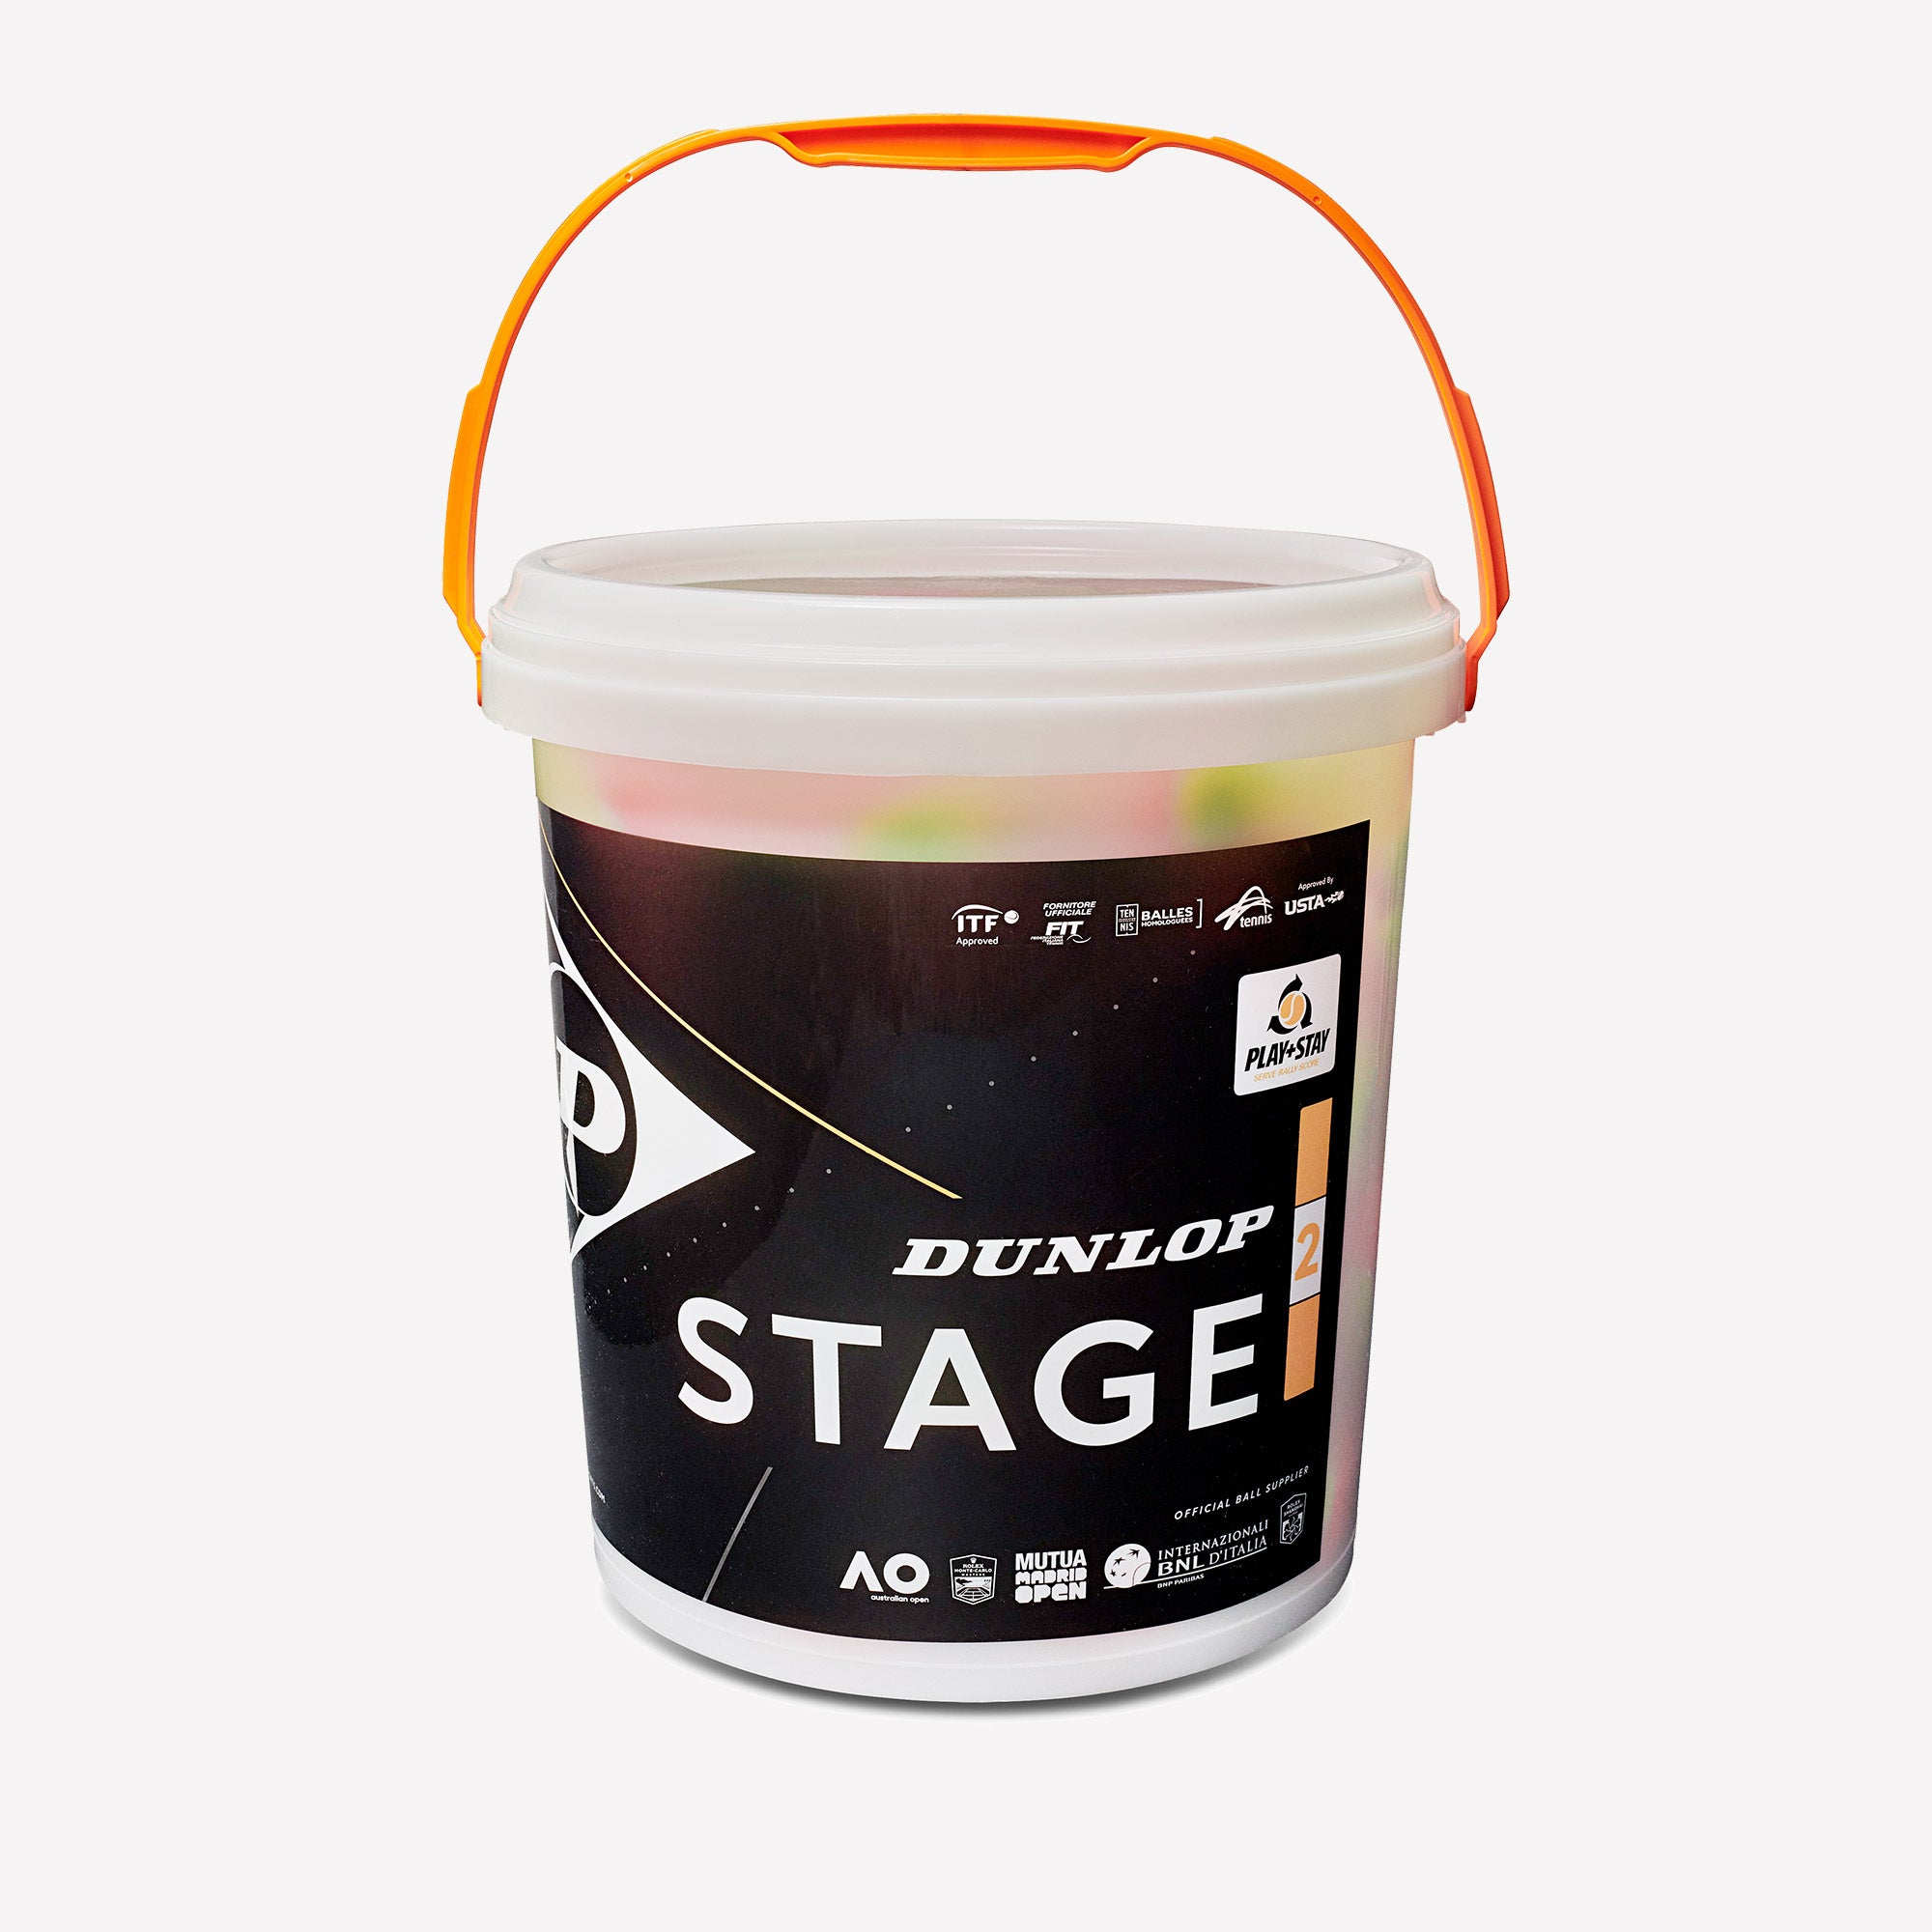 Dunlop Stage 2 Orange 60 Tennis Balls Bucket 1